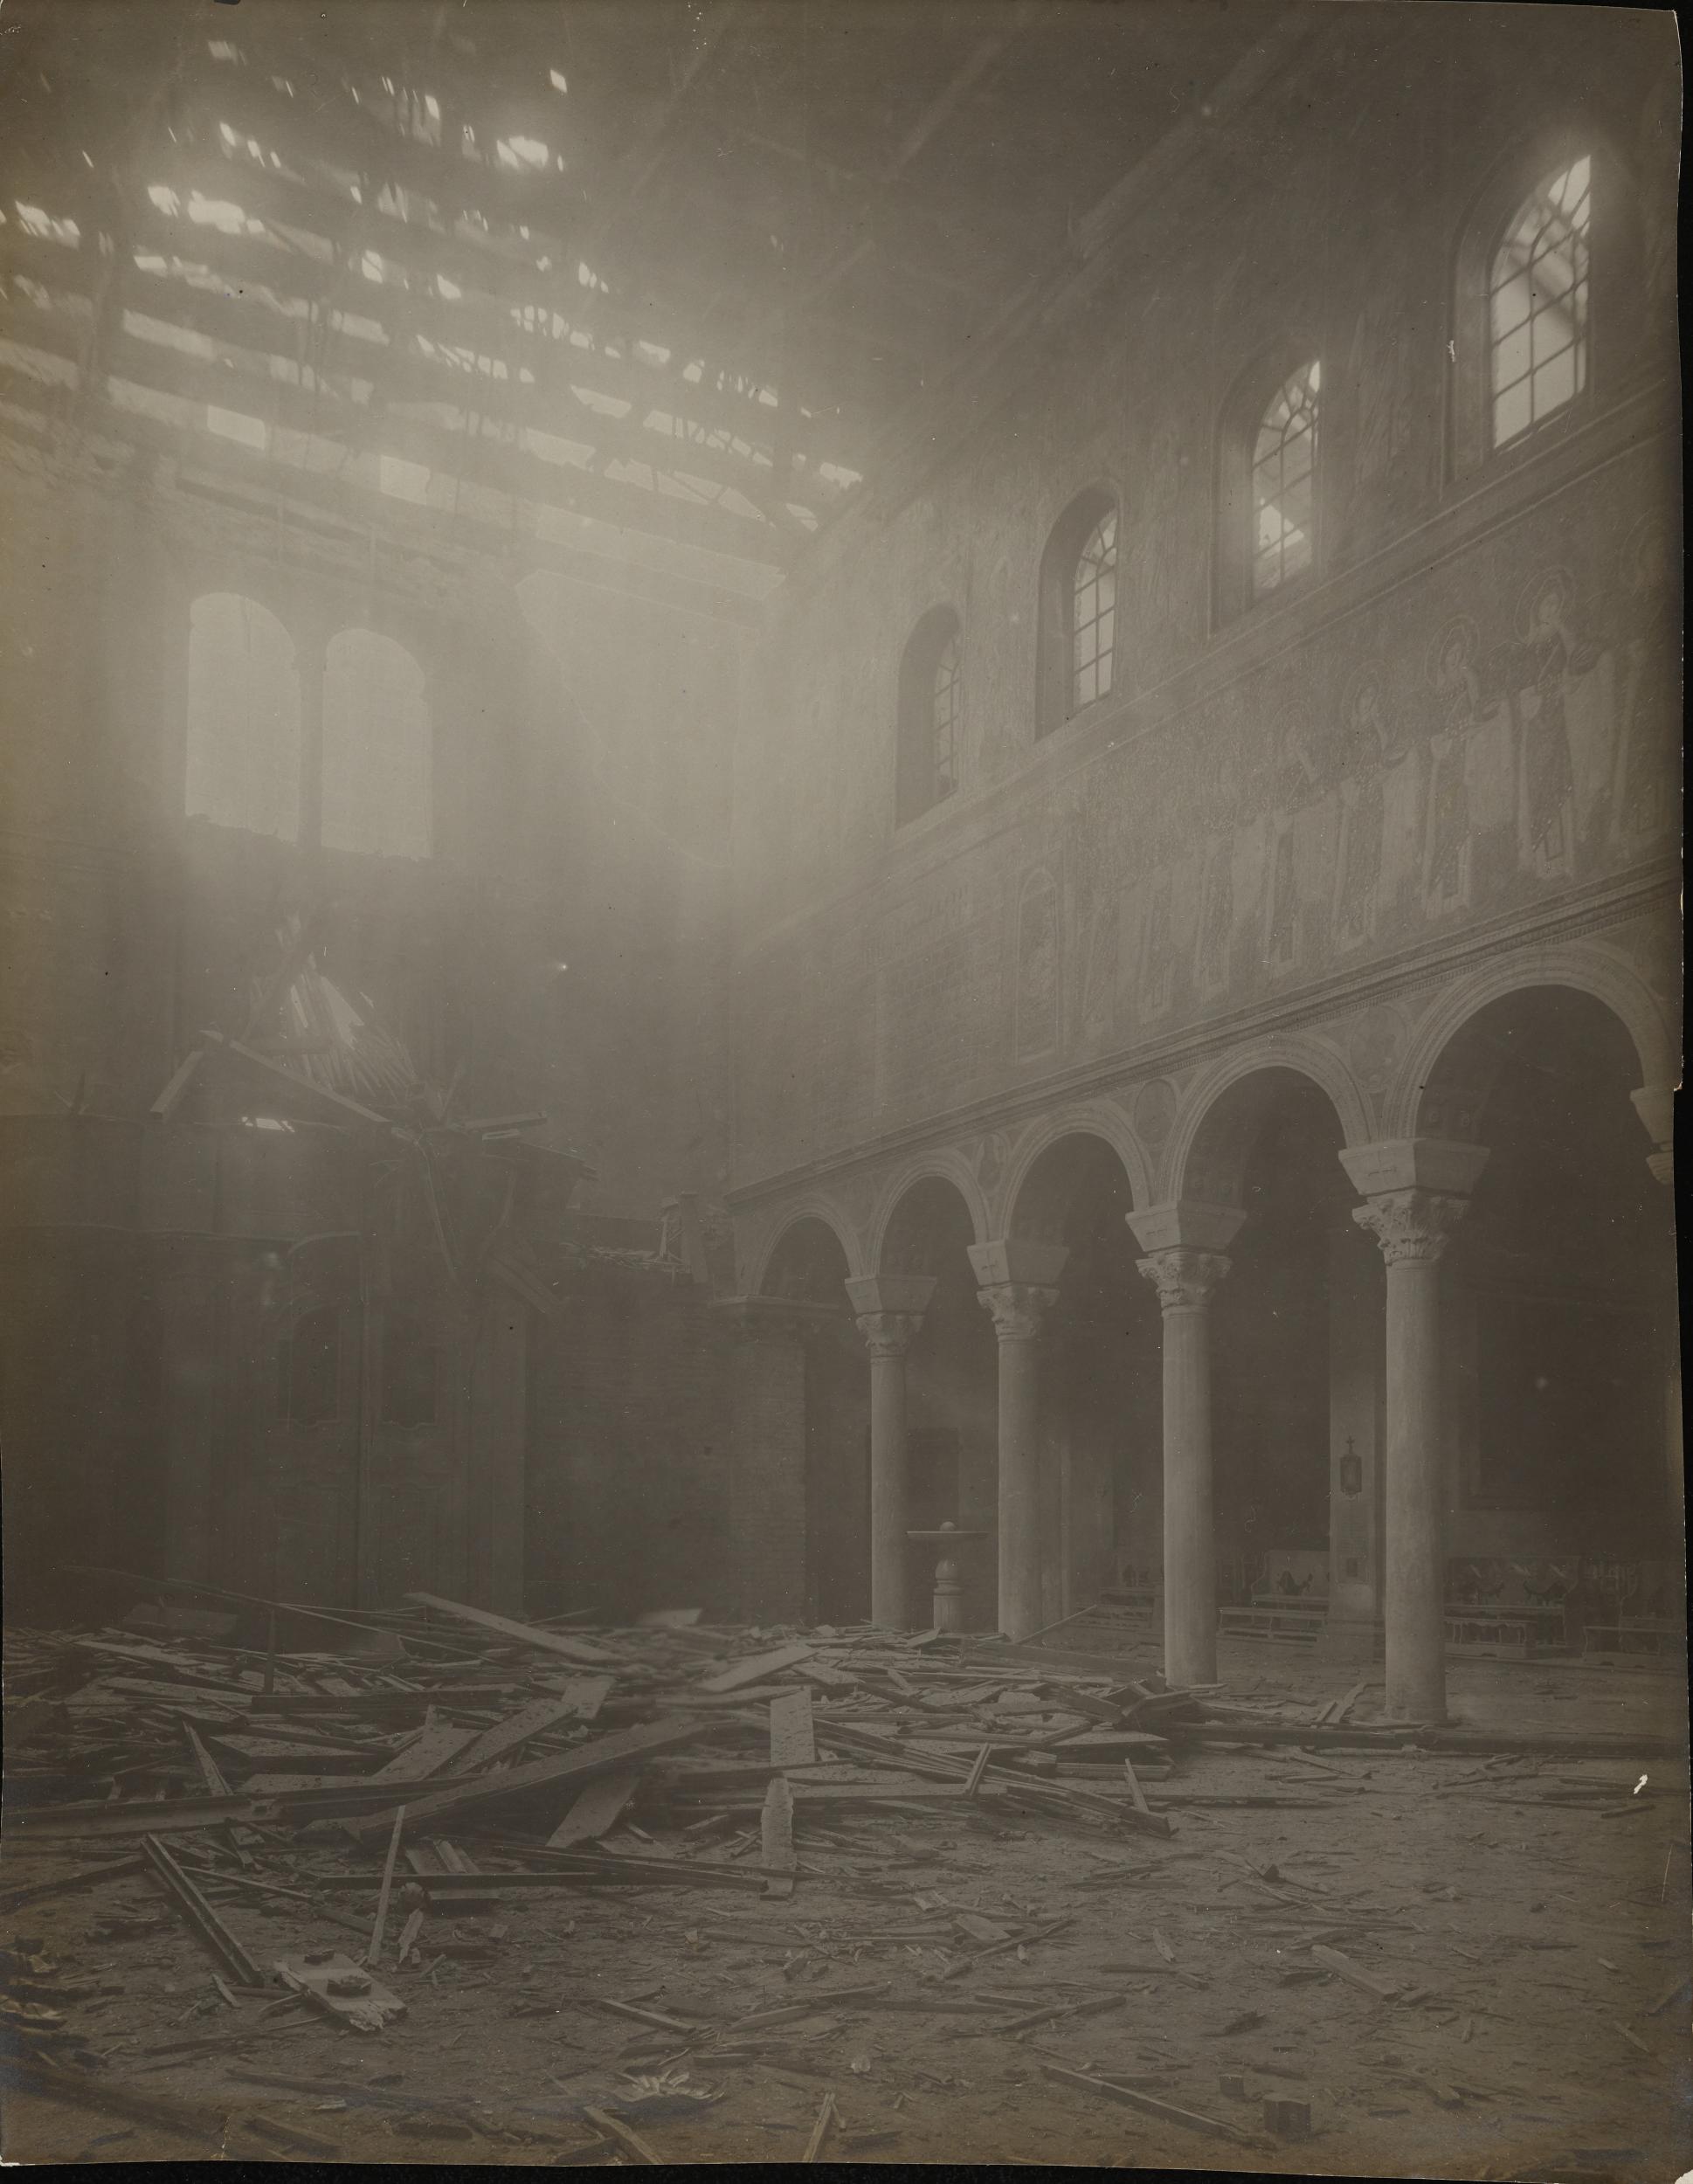 Fotografo non identificato, Ravenna - Basilica di S. Apollinare Nuovo, navata centrale dopo i bombardamenti, gelatina ai sali d'argento, MPI6088611